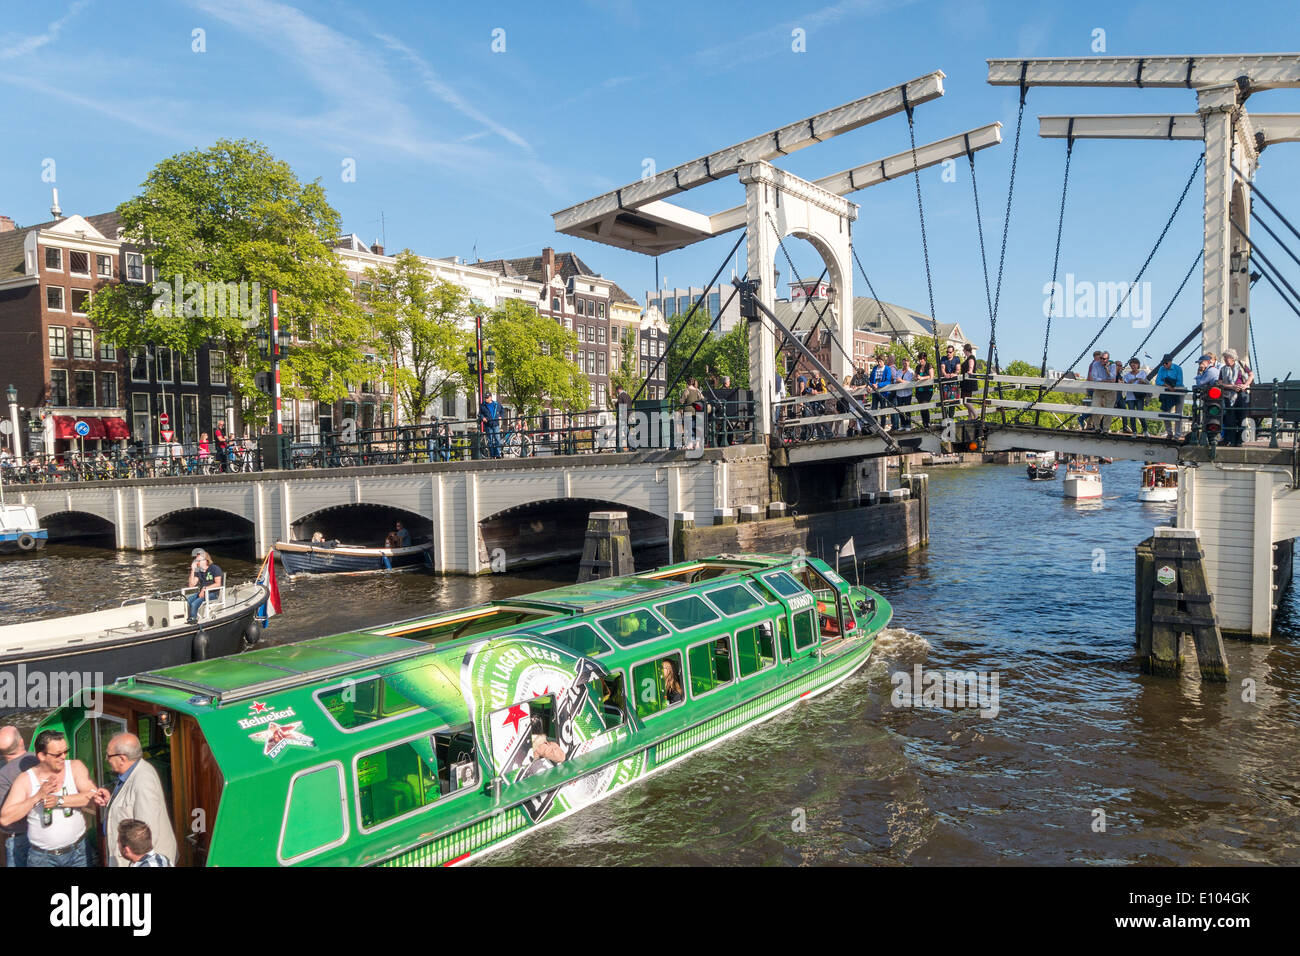 Heineken Amsterdam canal navette bateau de croisière avec pont Magere Brug, maigres, sur la rivière Amstel canal avec de petits bateaux Banque D'Images